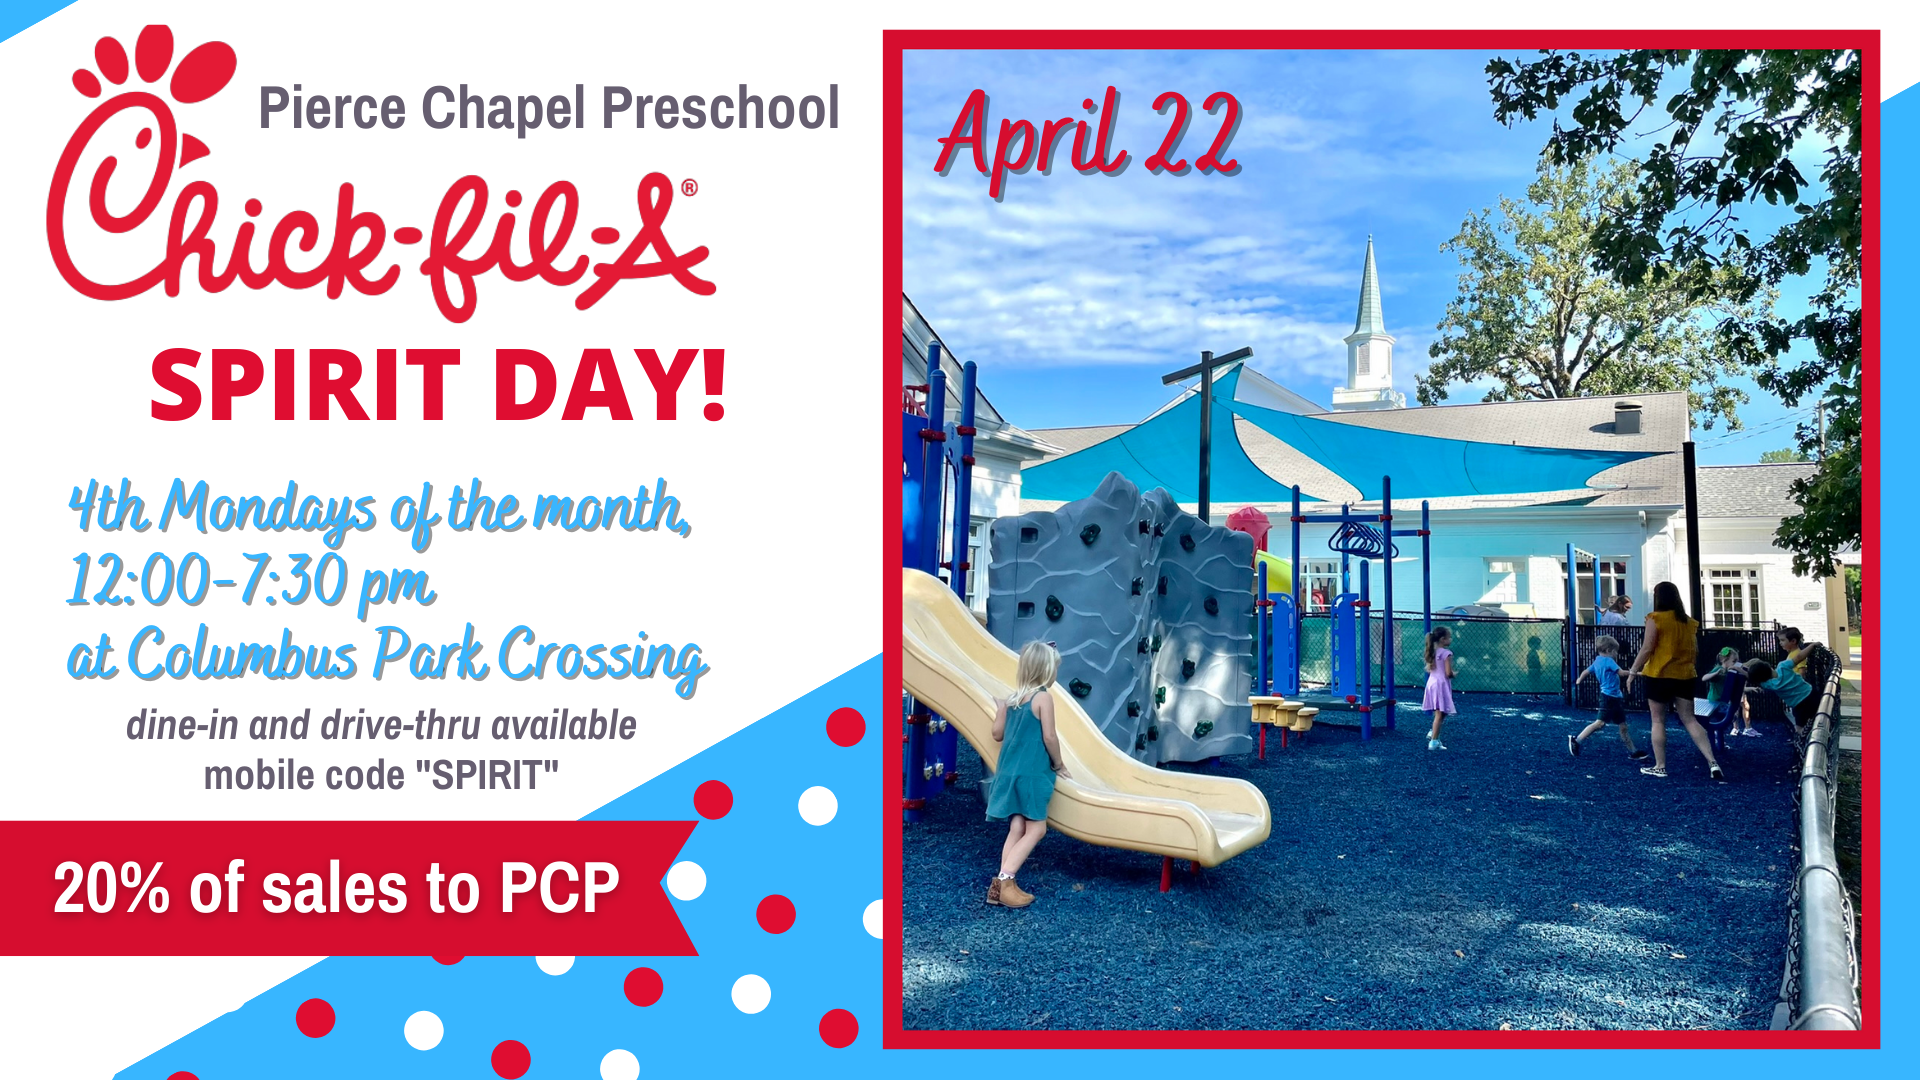 PC Preschool Chick-fil-A Spirit Day- April 22